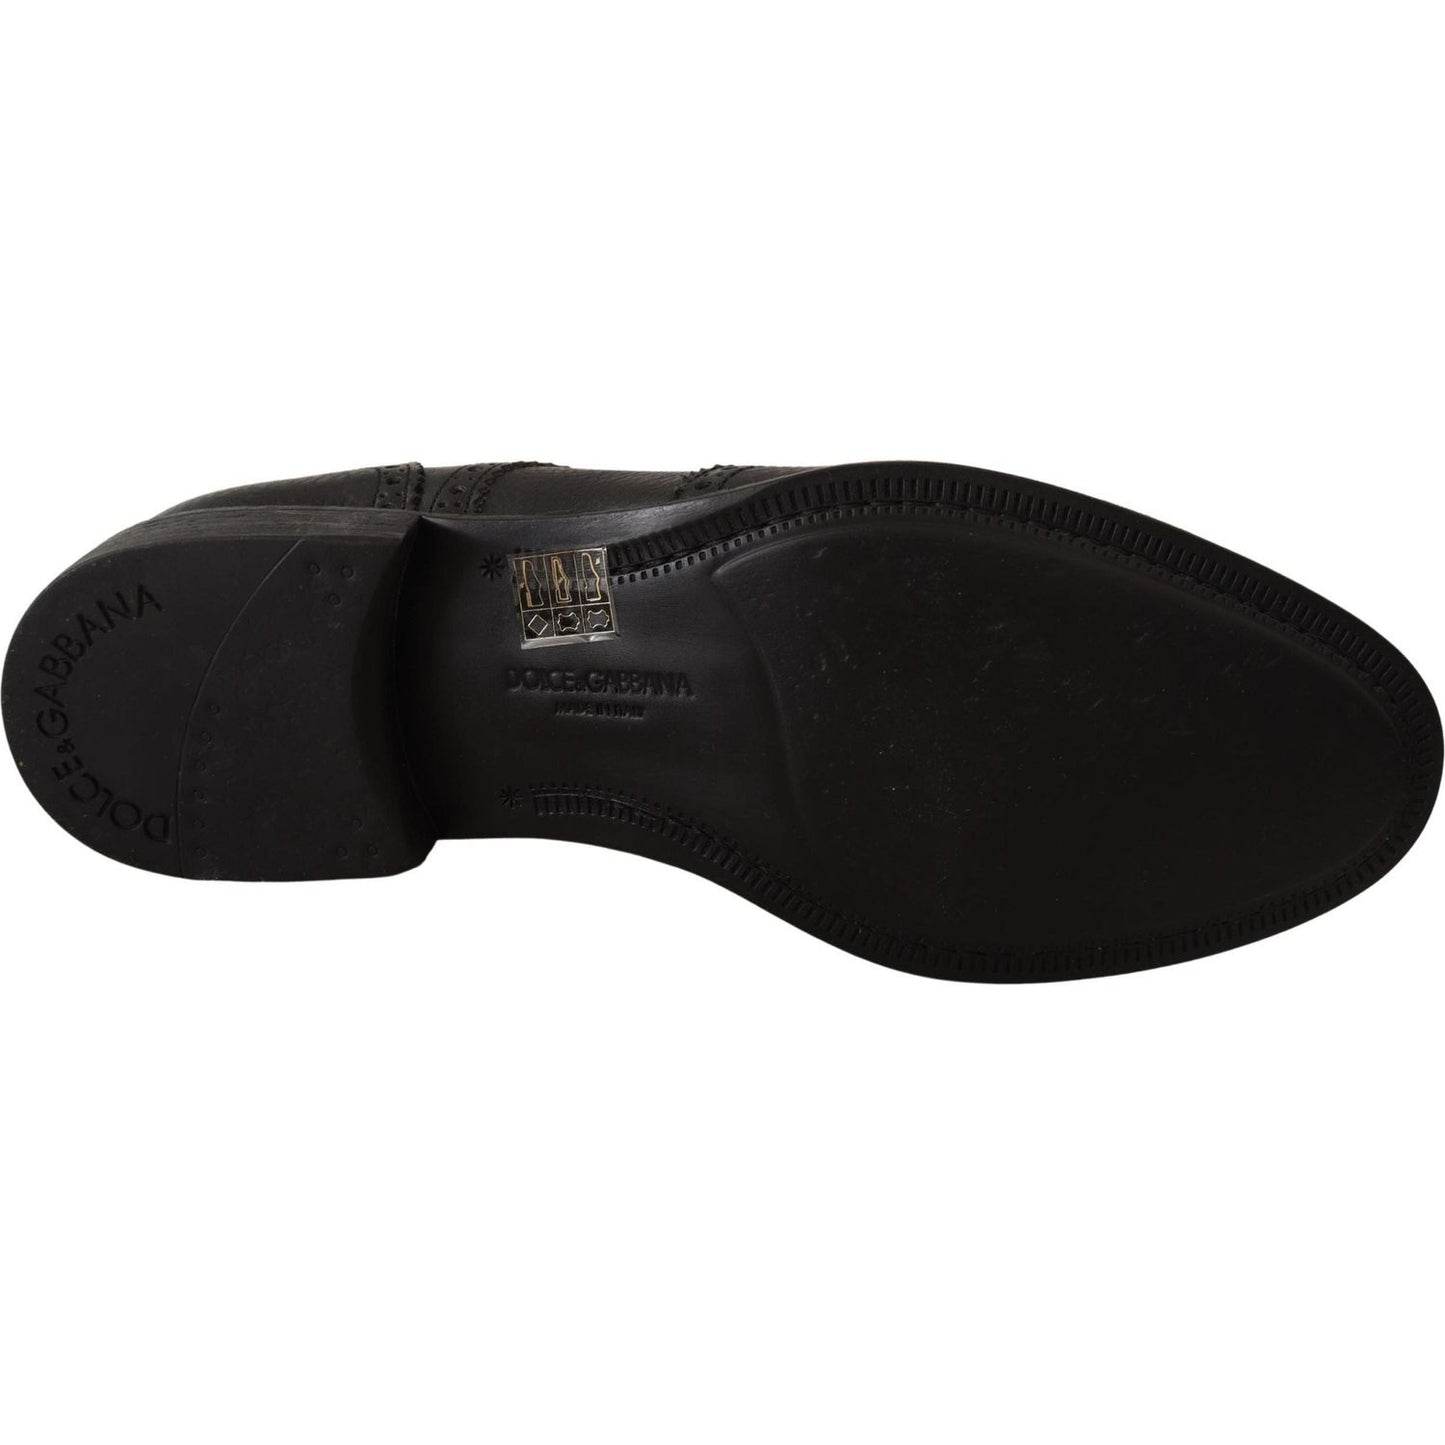 Dolce & Gabbana | Black Leather Oxford Wingtip Formal Dress Shoes | 389.00 - McRichard Designer Brands